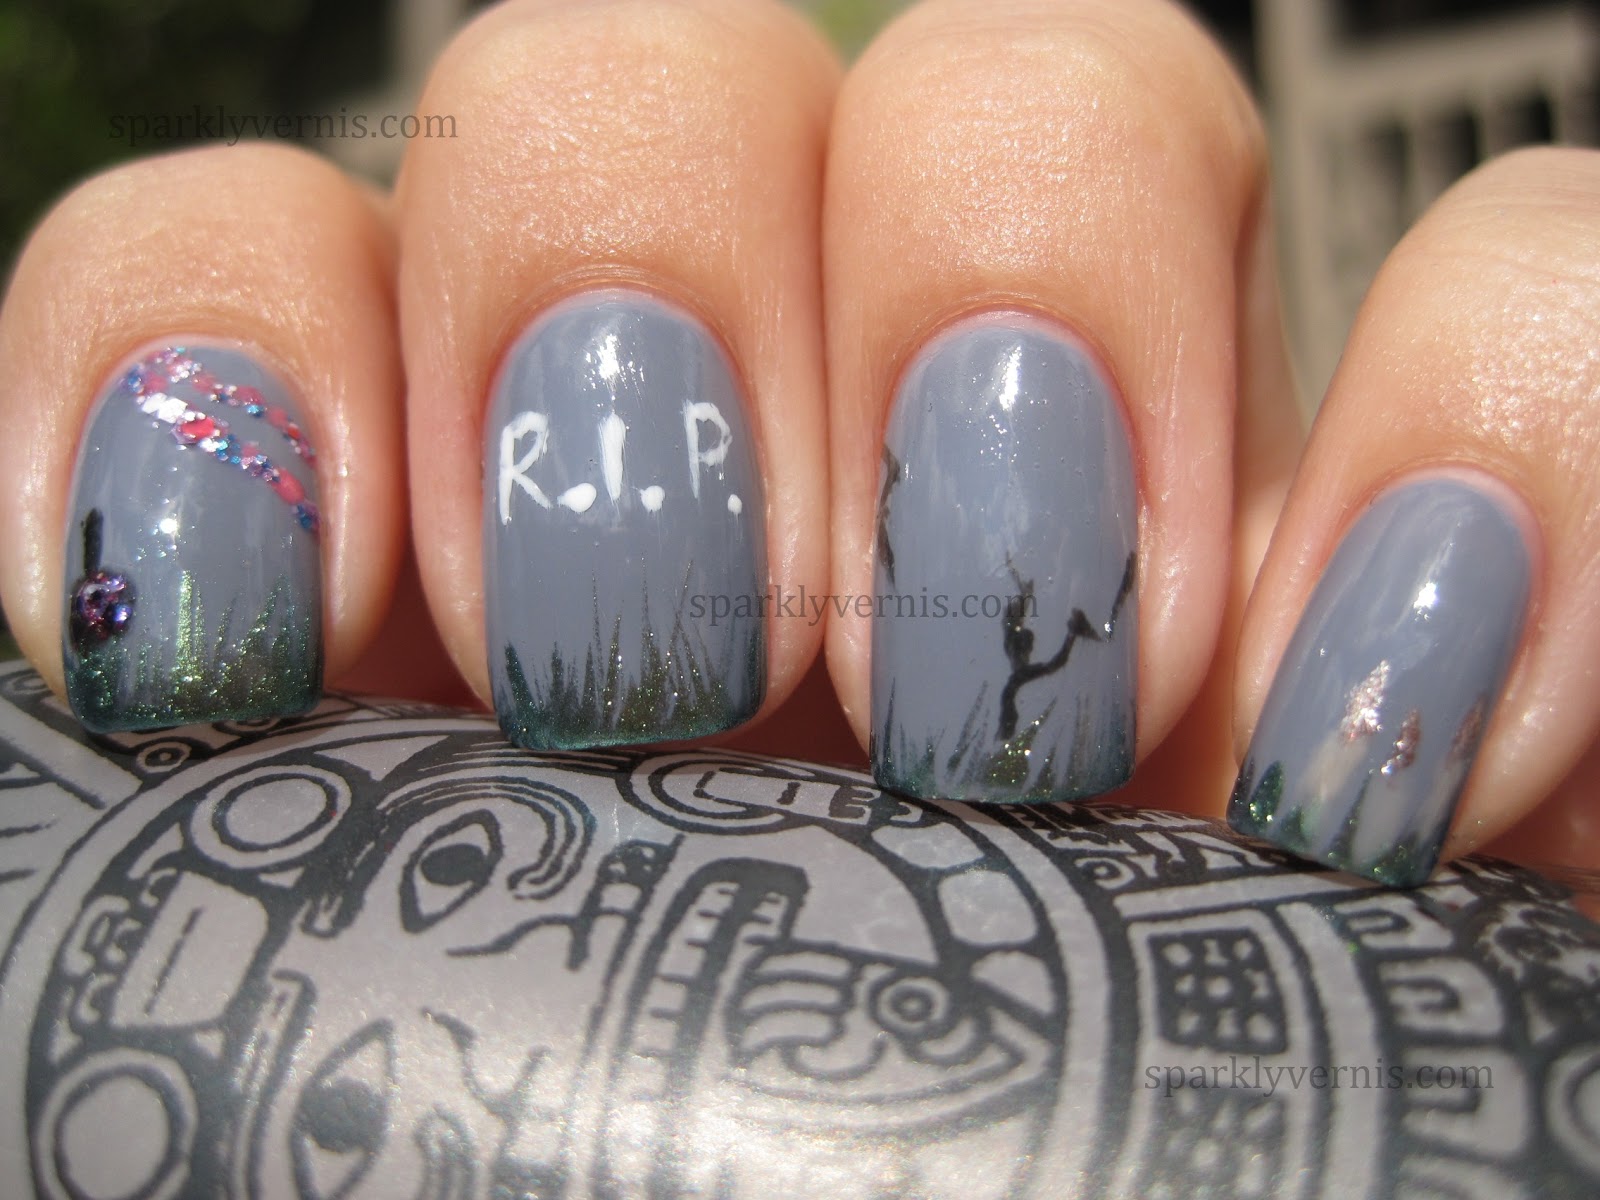 Sparkly Vernis: Dia de los Muertos nails